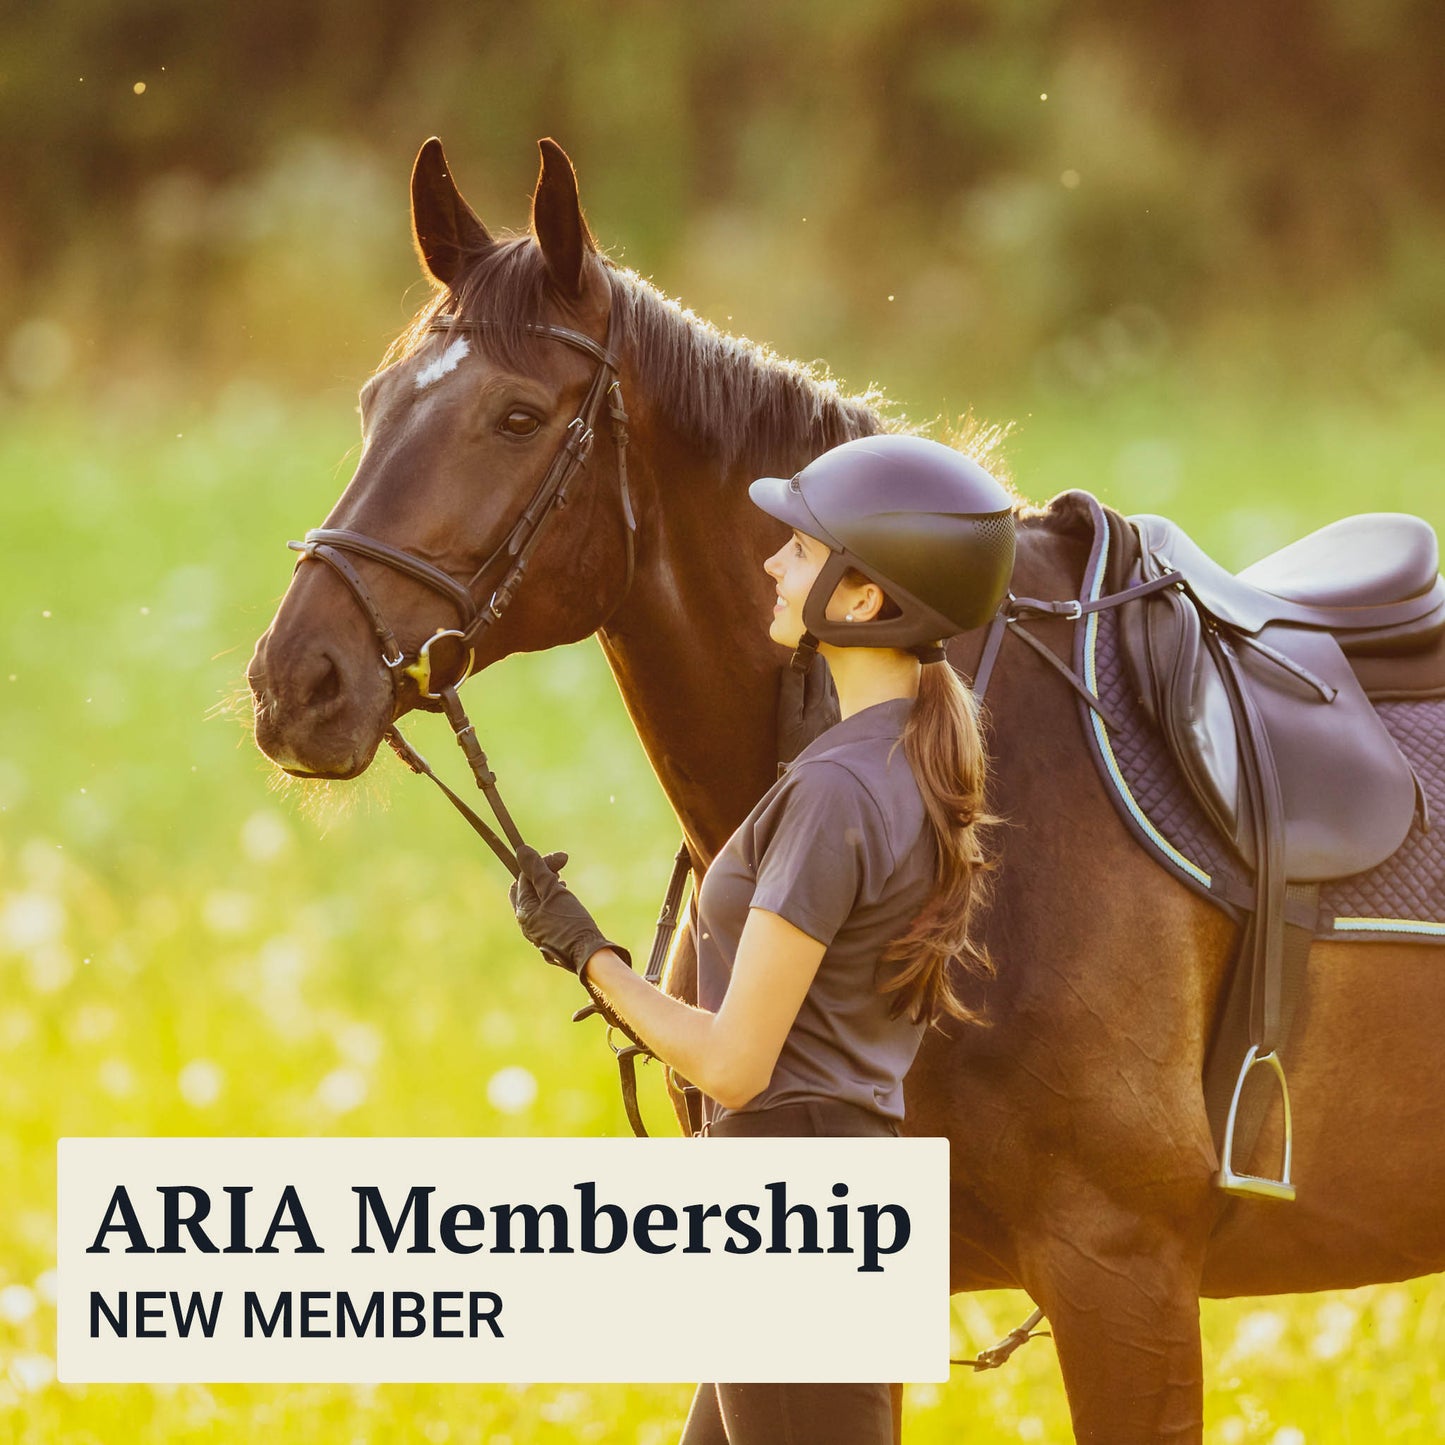 ARIA Membership - New Member